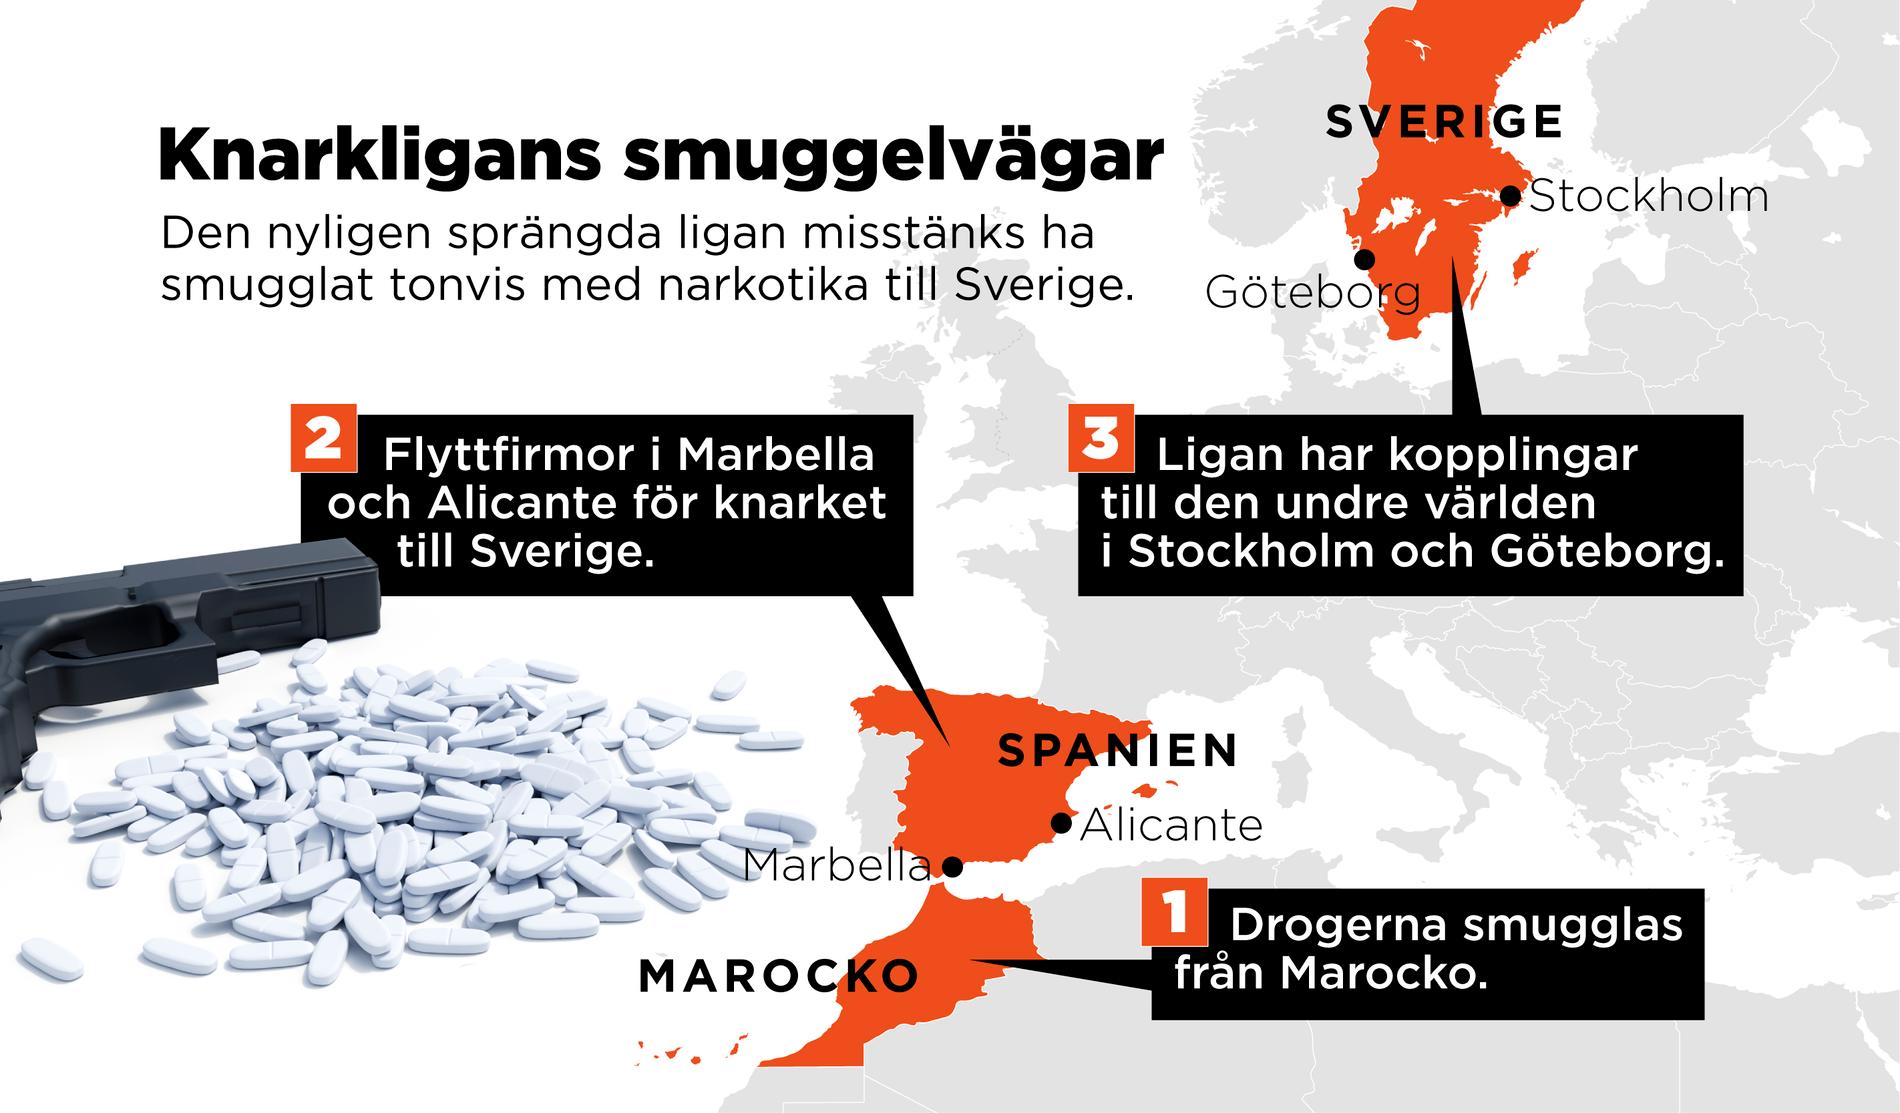 Karta som visar hur ligan smugglat narkotika till Sverige.